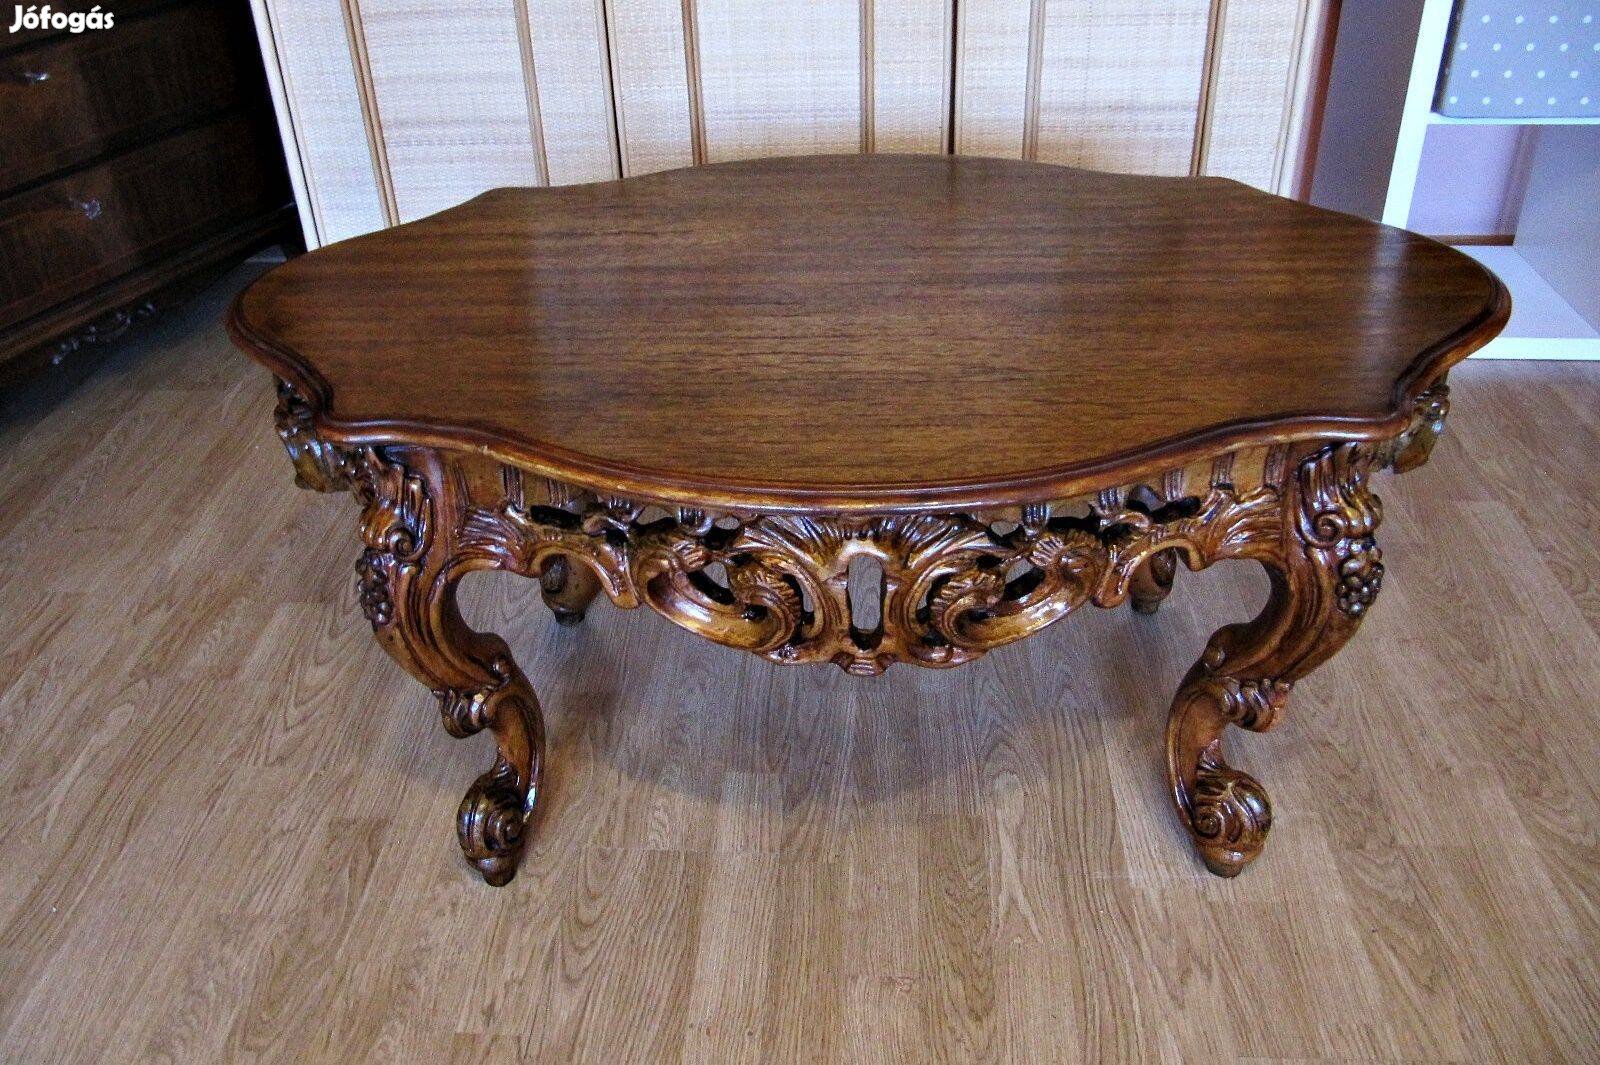 Faragott barokk stílusú asztal